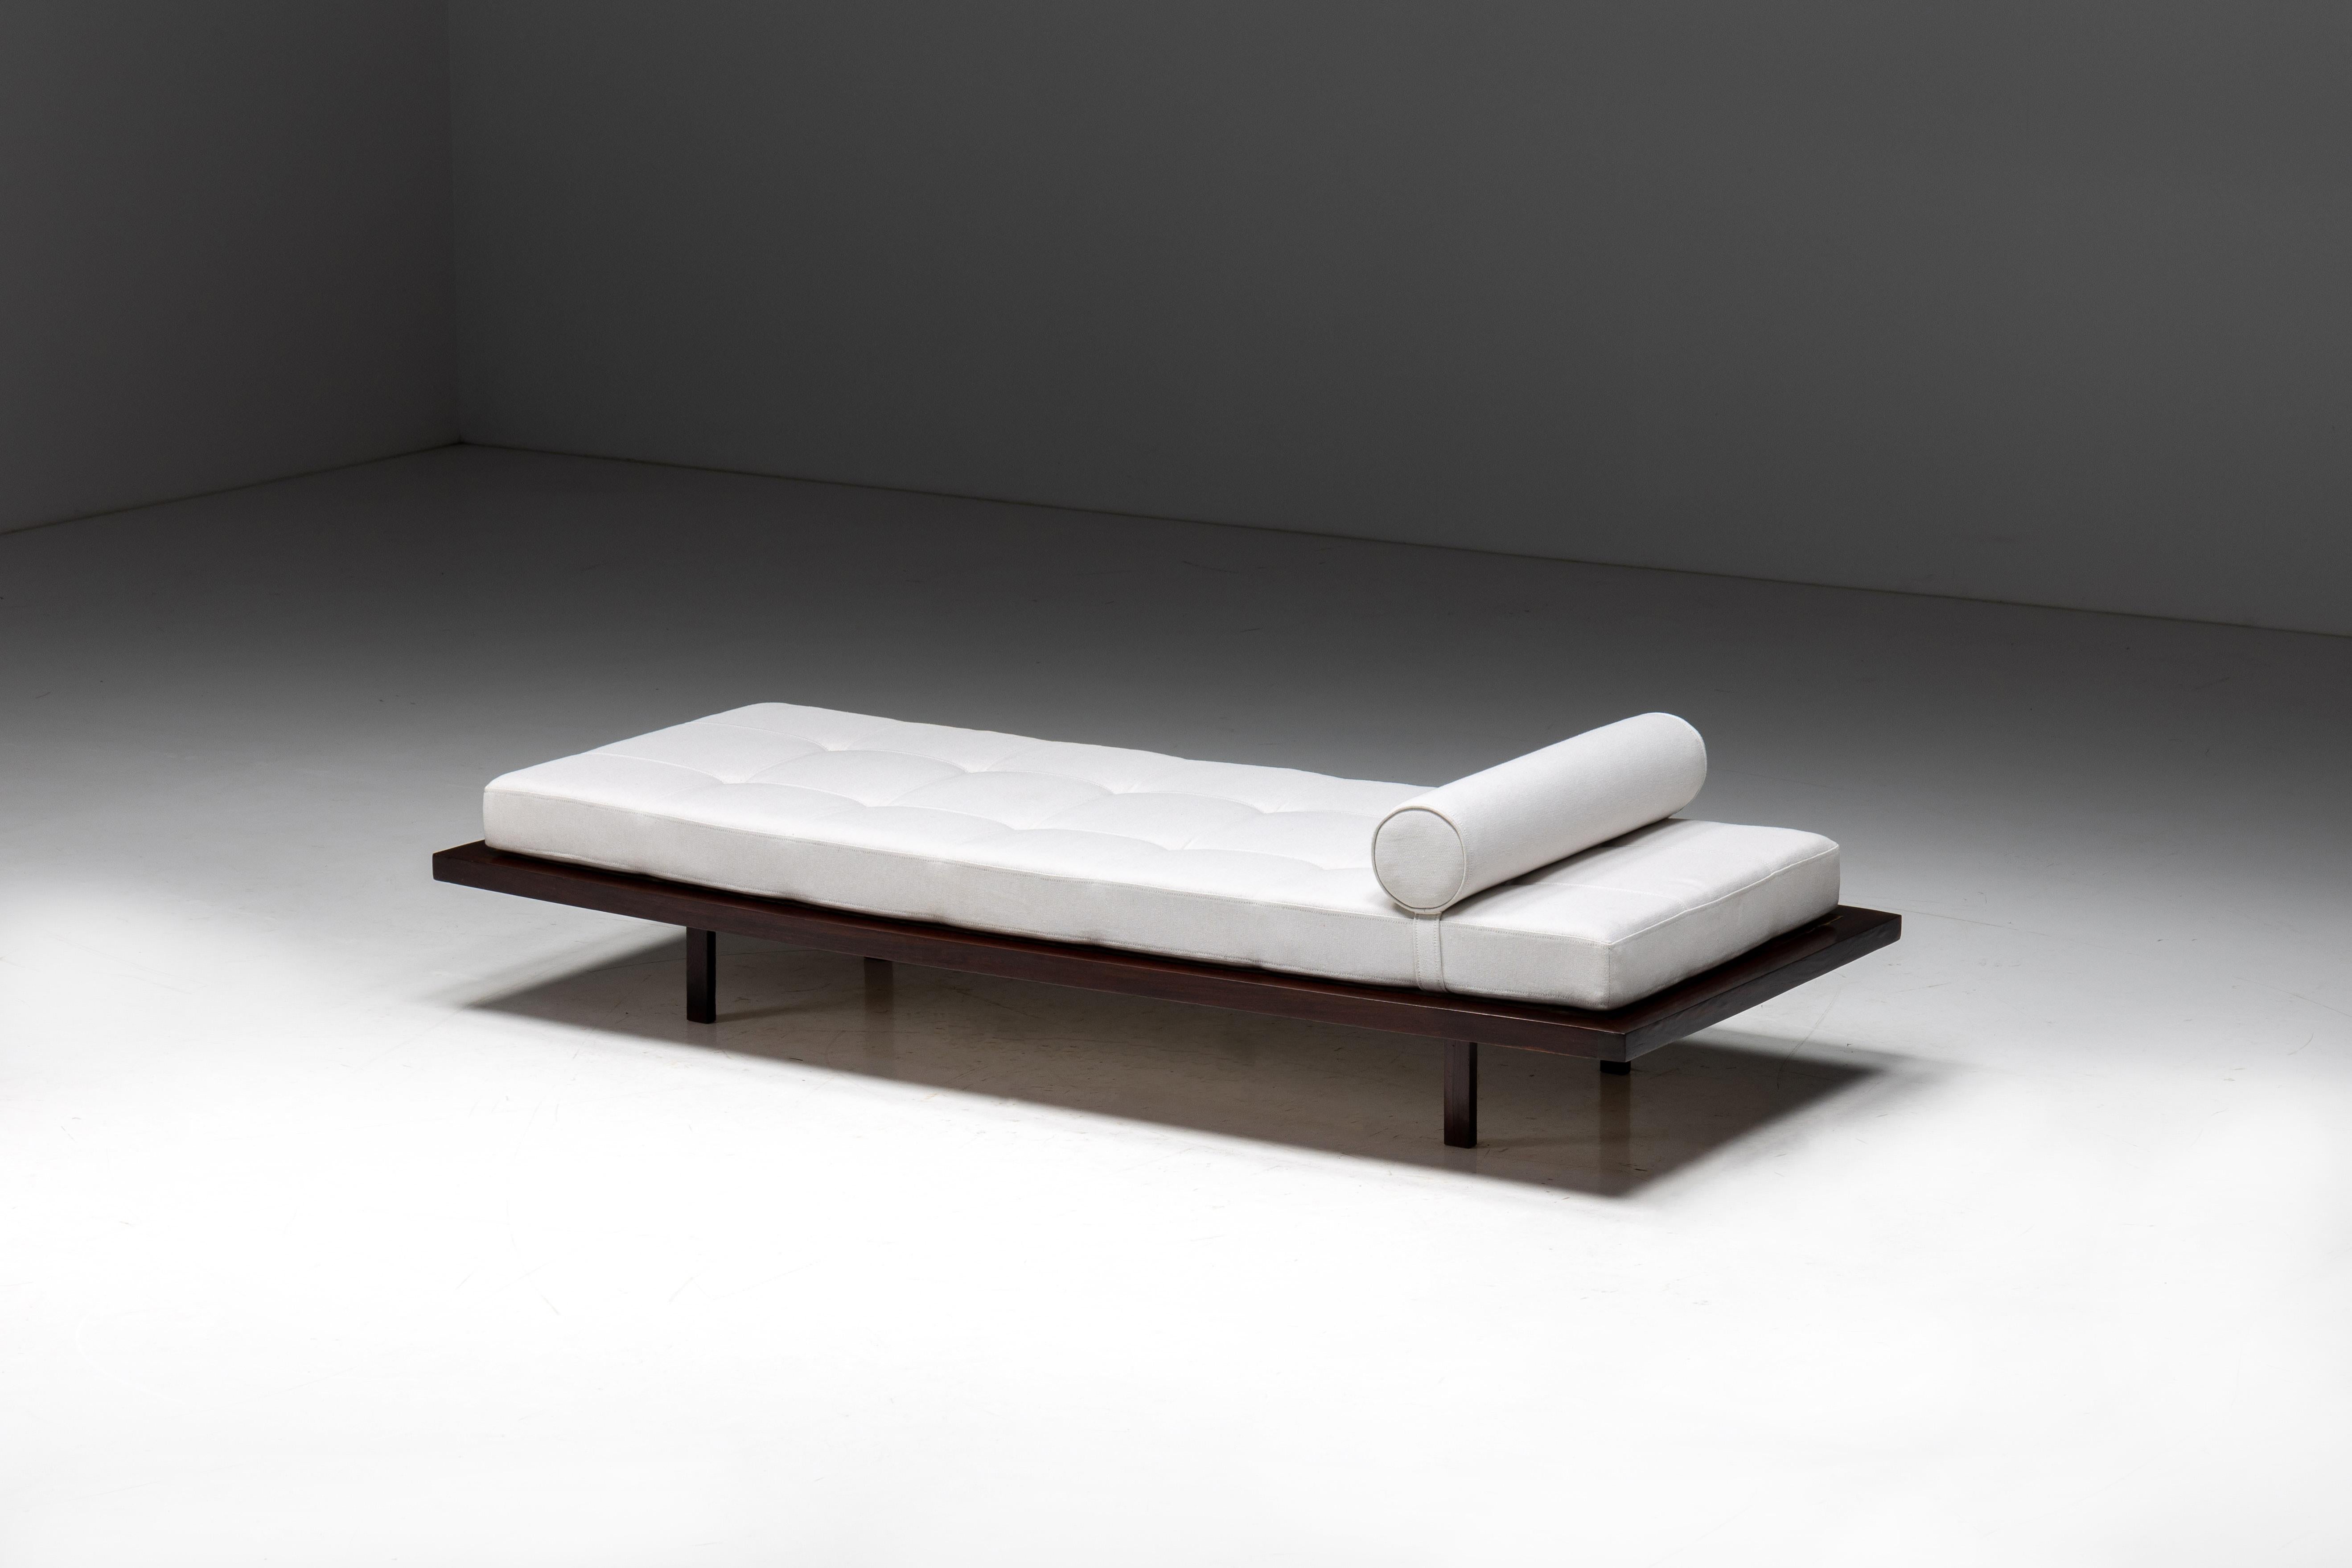 Dieses außergewöhnliche Tagesbett aus den 1960er Jahren, entworfen vom renommierten polnisch-brasilianischen Architekten und Designer Jorge Zalszupin, ist ein Zeugnis der modernen Eleganz der Jahrhundertmitte. Das minimalistisch gestaltete Bett